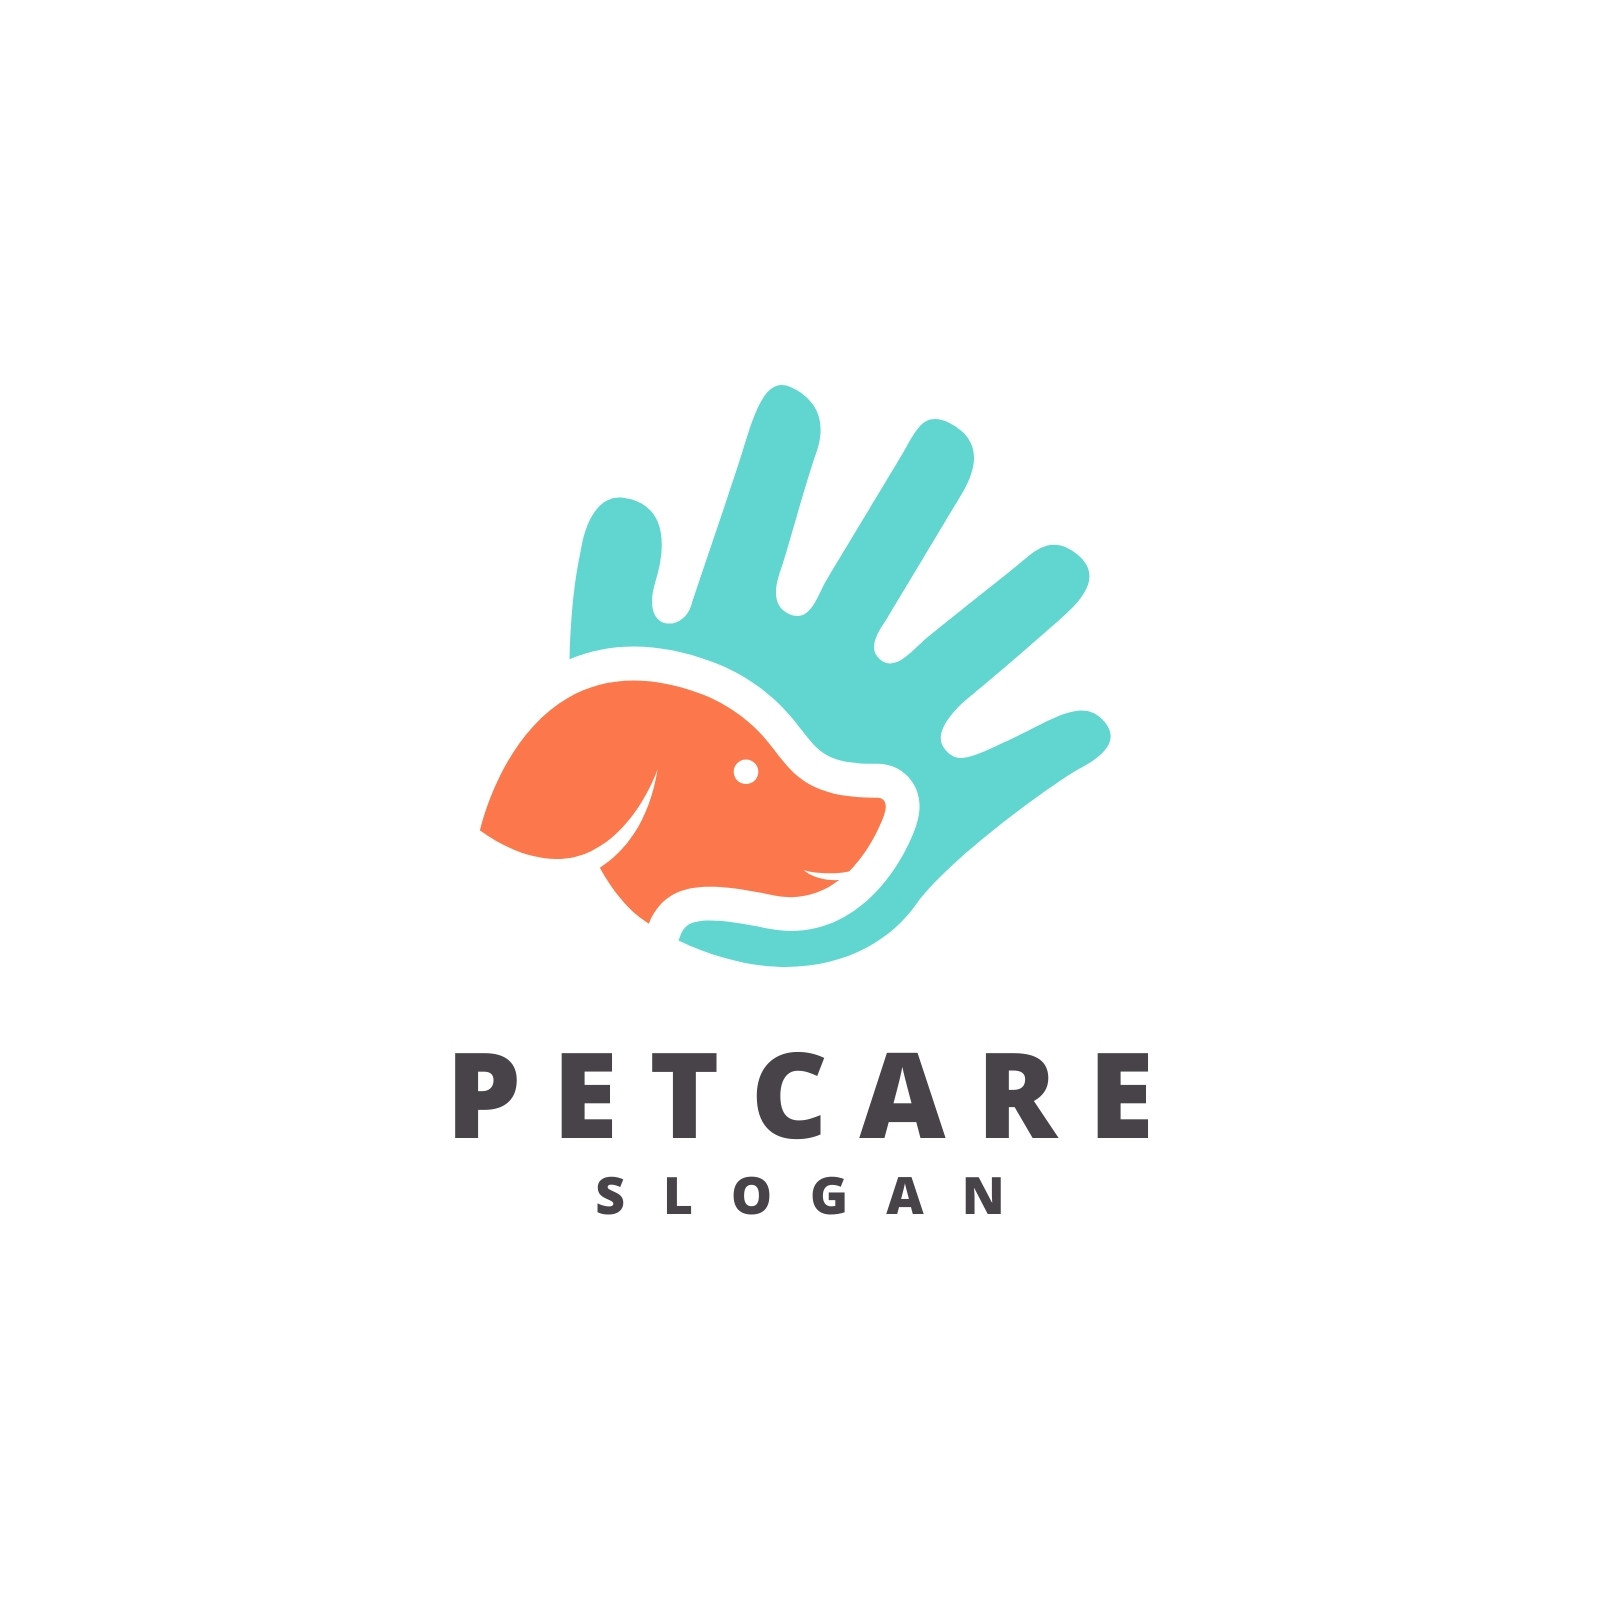 Pet Care Logos